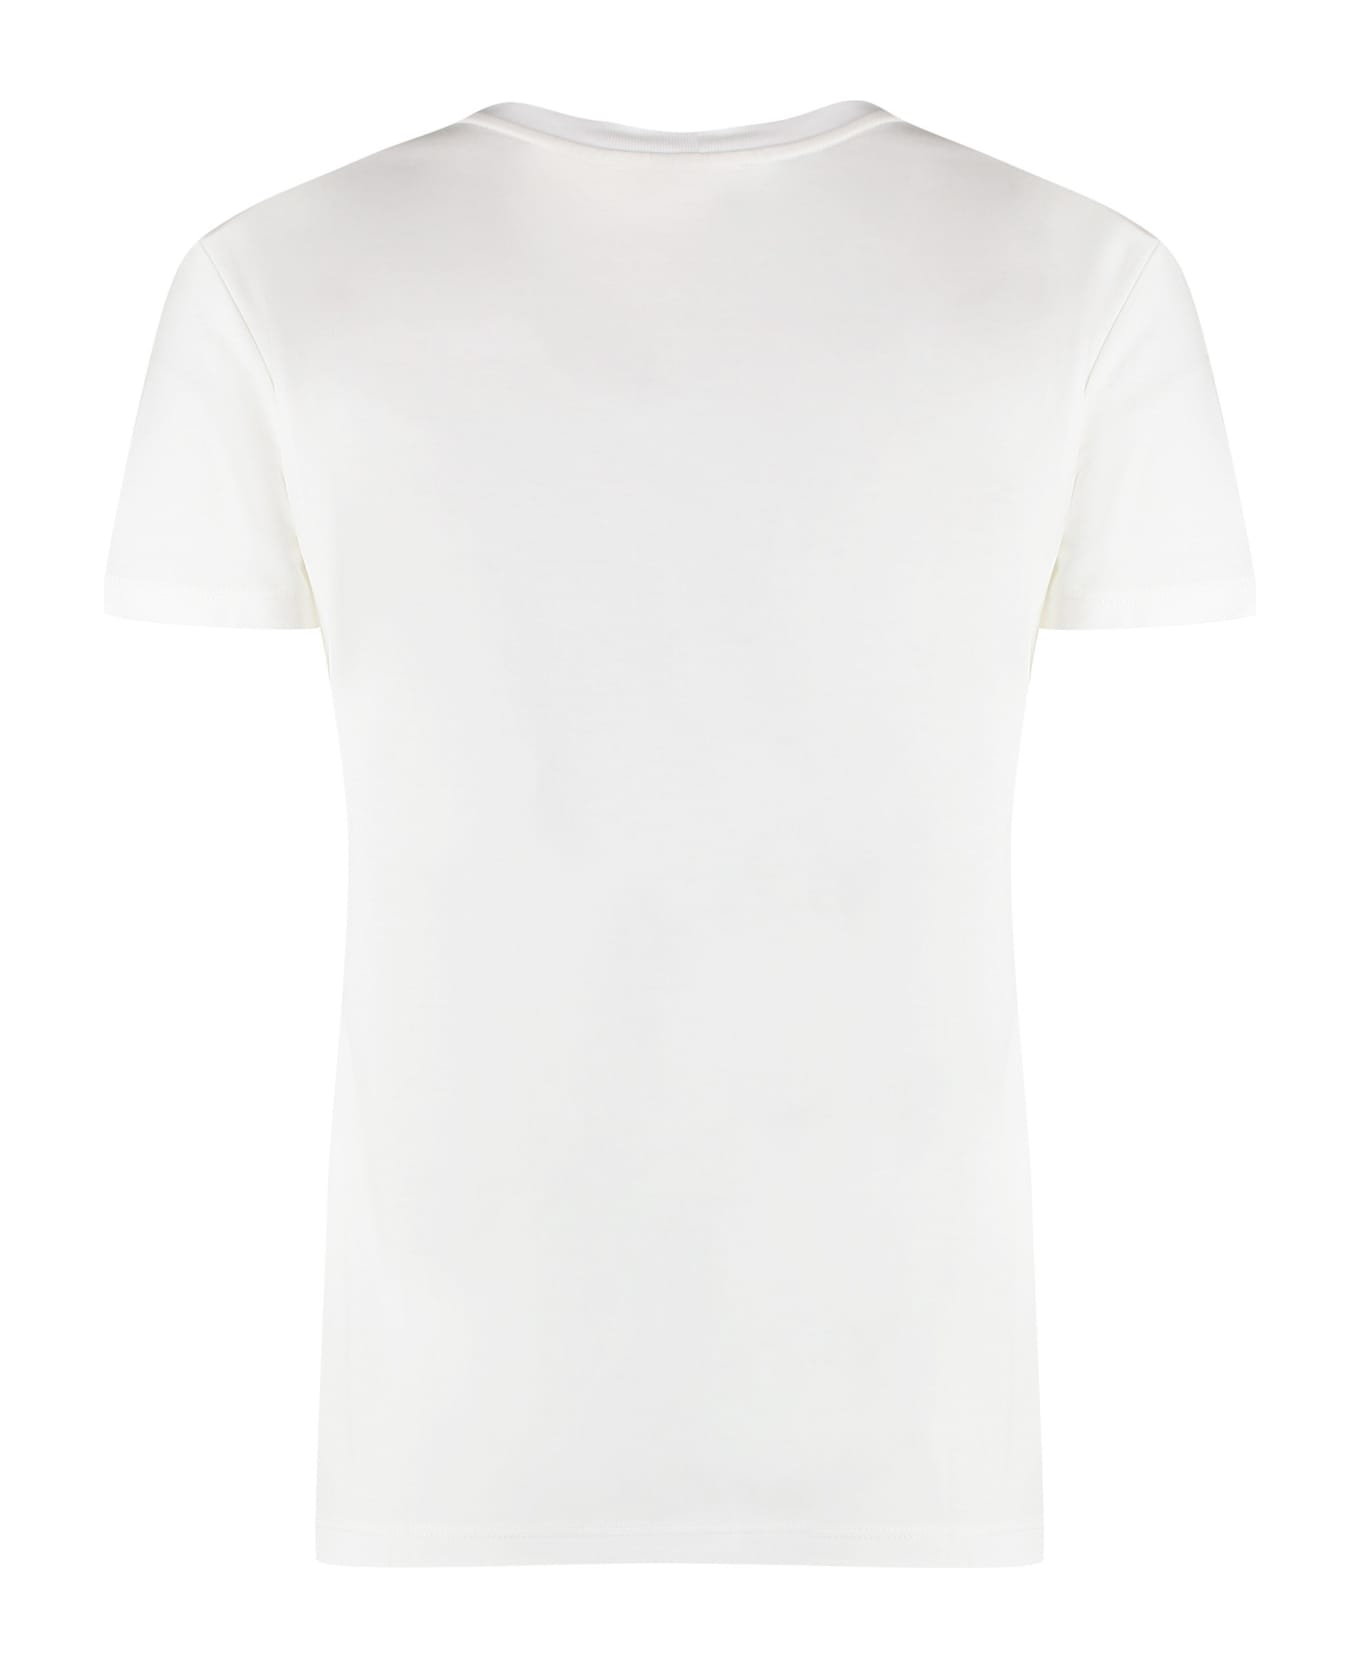 Max Mara Elmo Cotton Crew-neck T-shirt - White Tシャツ